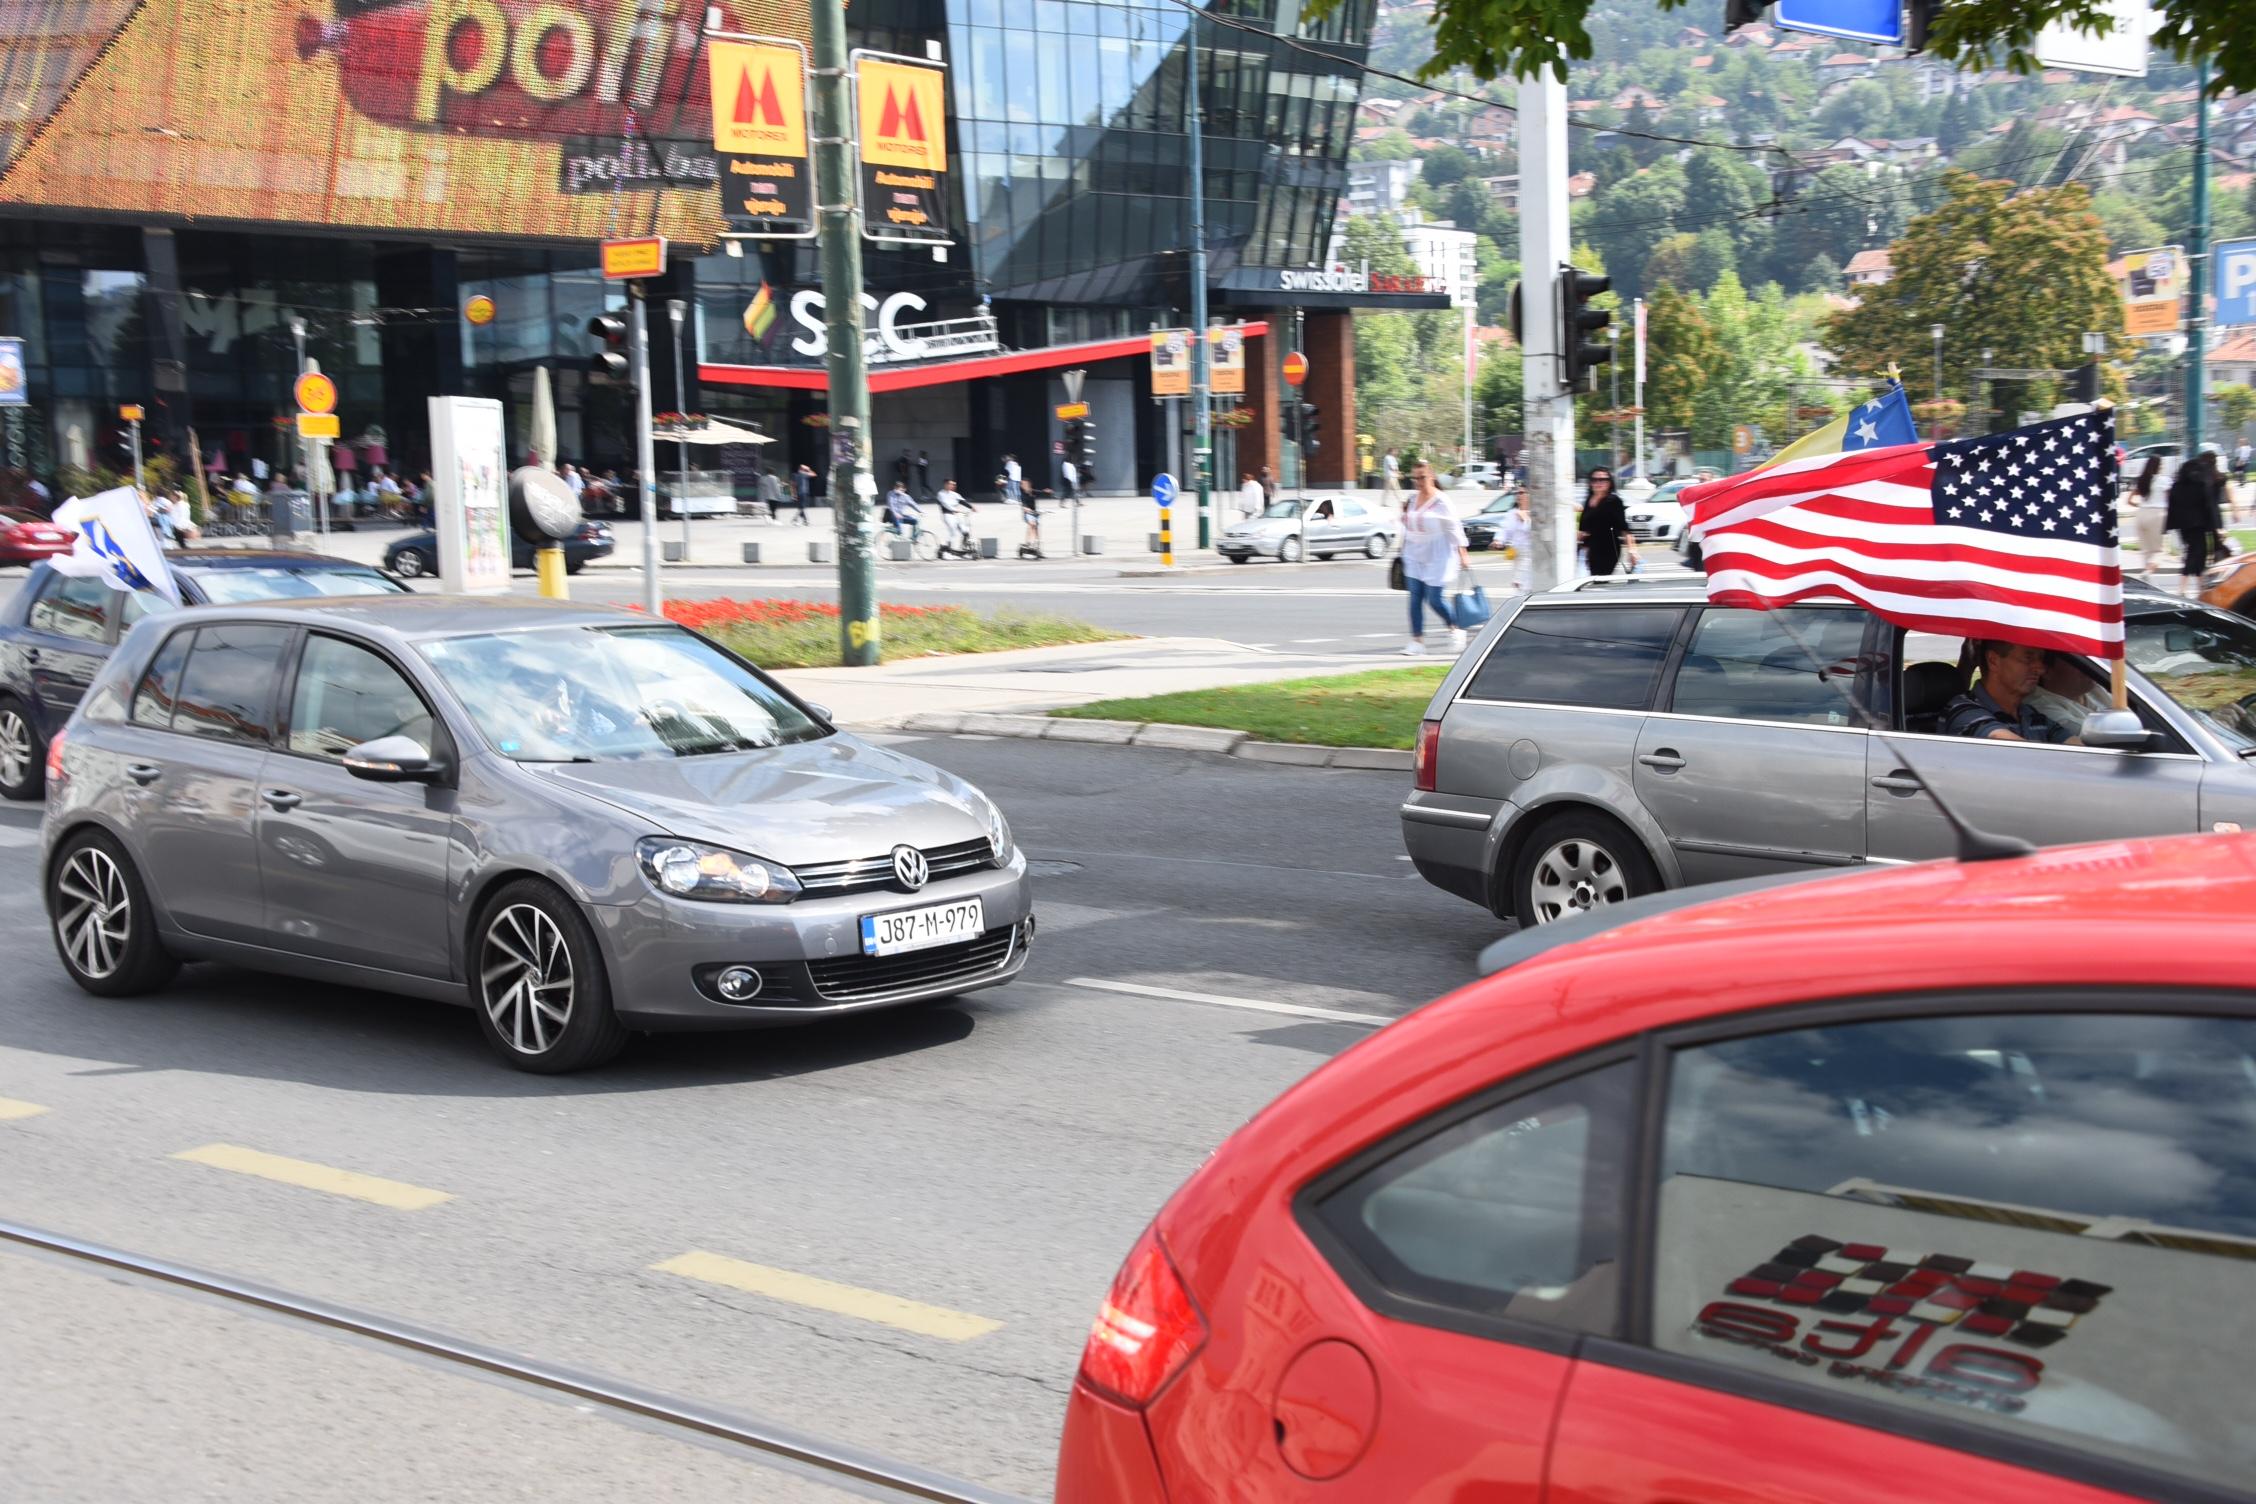 Krenula protestna vožnja u znak podrške Bošnjacima Crne Gore - Avaz